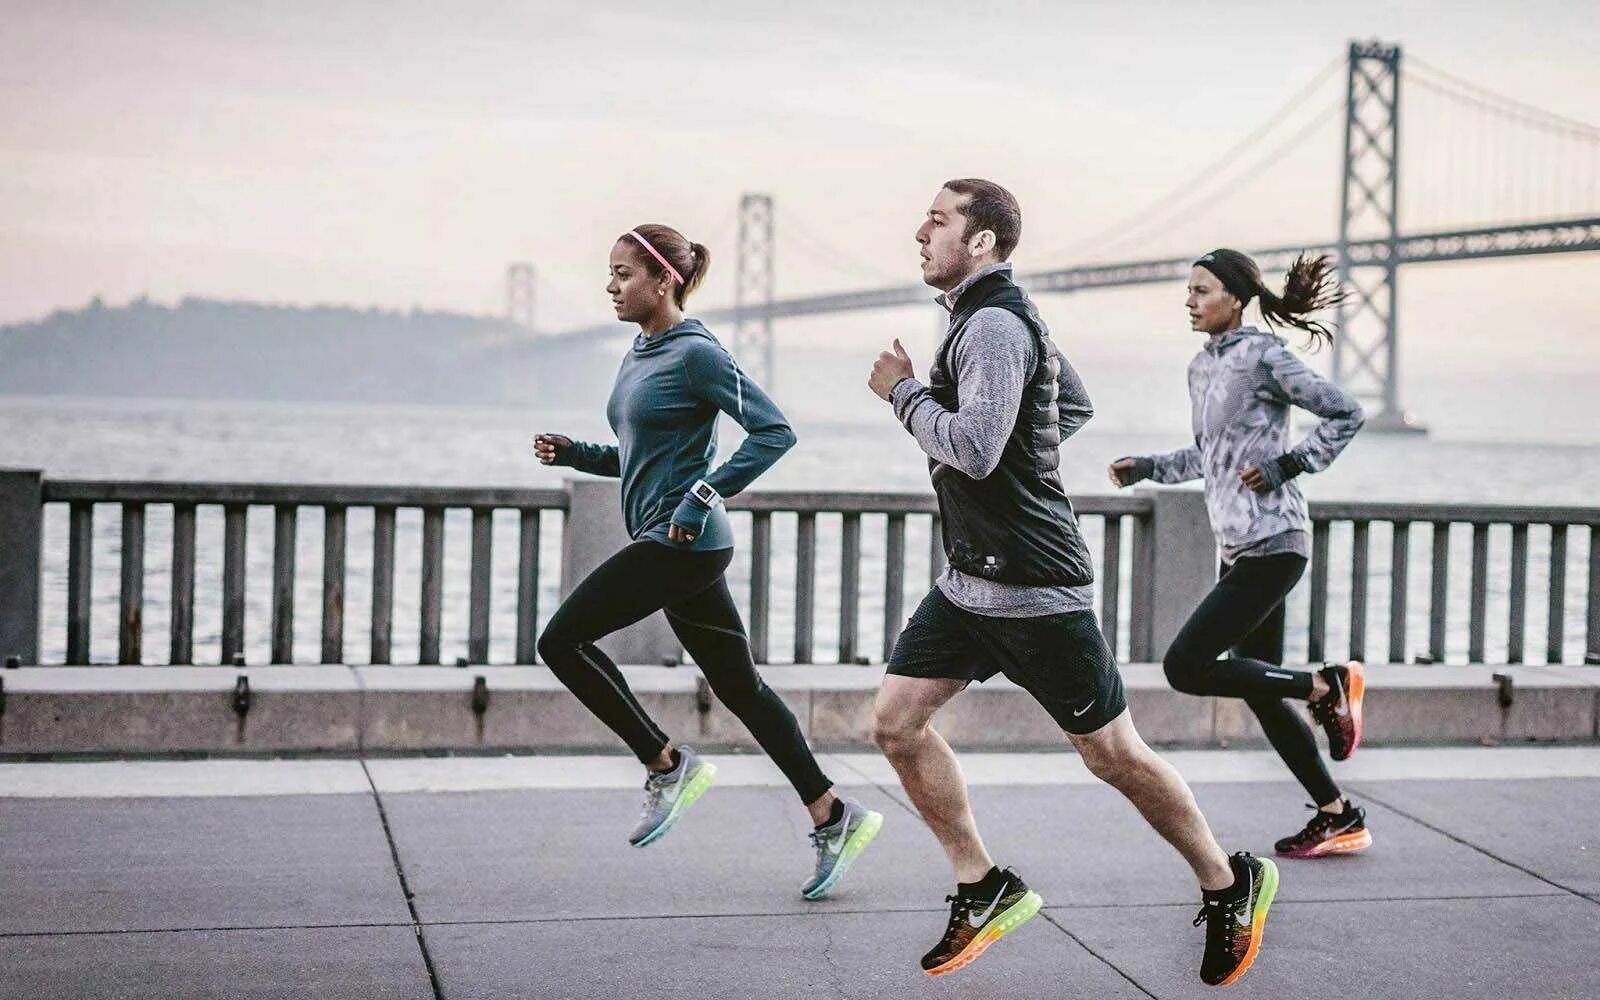 Nike Running. Nike Running бег. Занятие спортом. Фотосессия в спортивном стиле. Оба два спортсмена